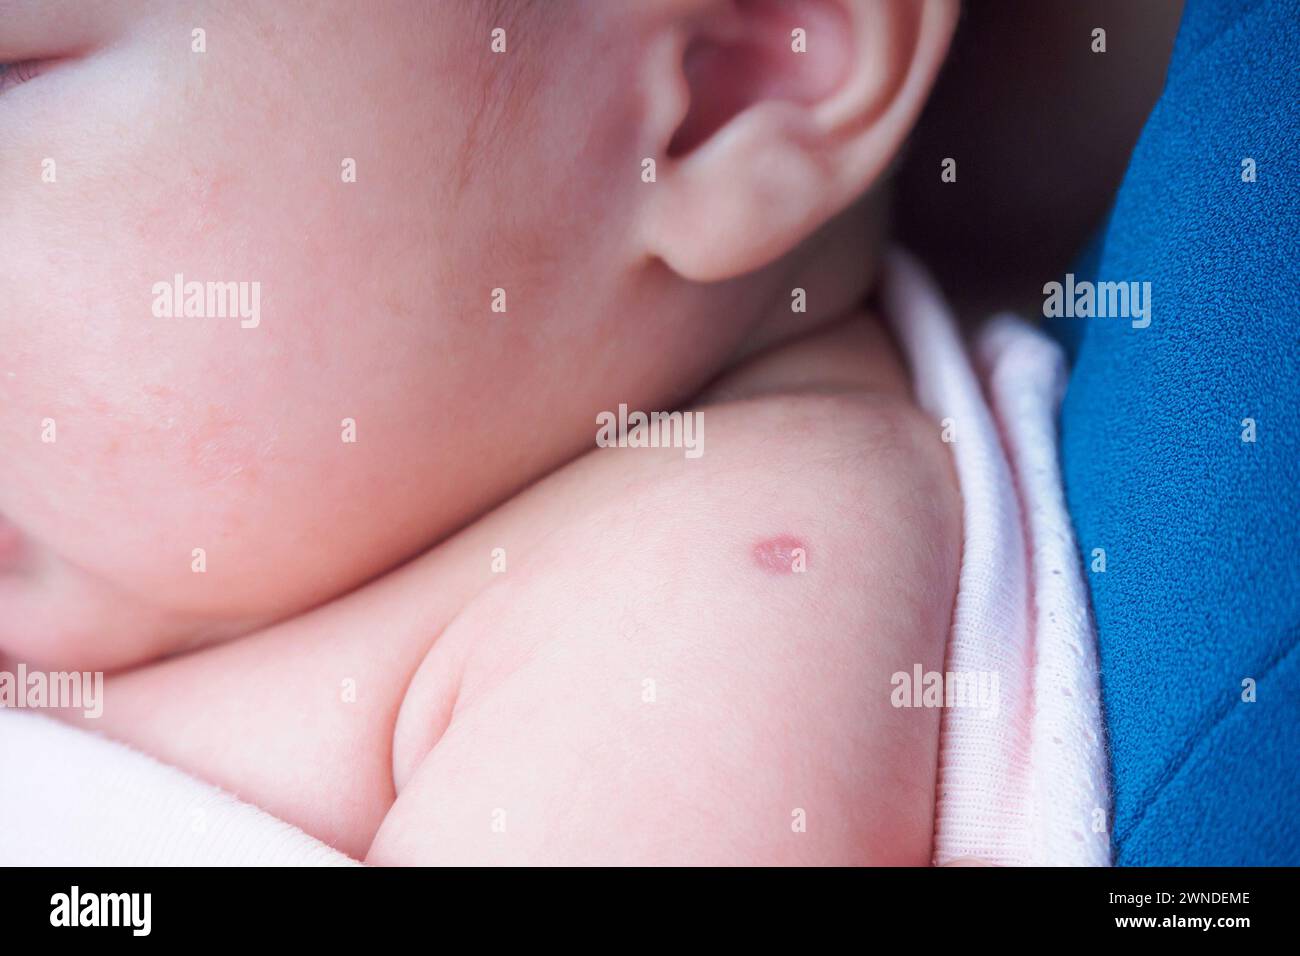 Réaction de vaccination du vaccin BCG de Bacillus Calmette Guérin sur l'épaule du nouveau-né, utilisé contre la tuberculose Banque D'Images